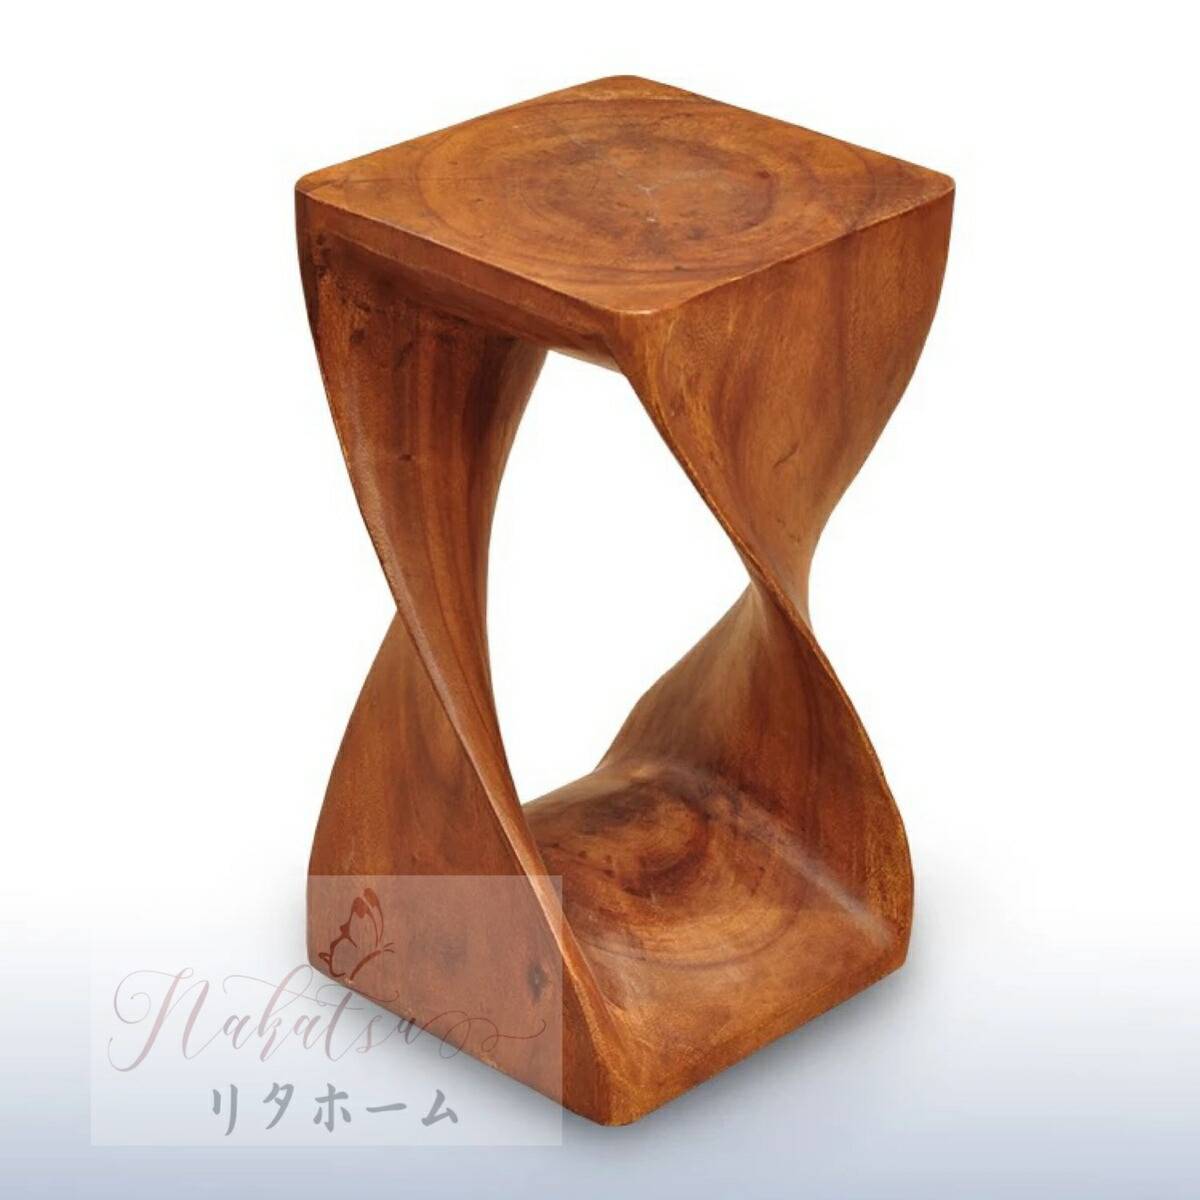 A37471 アンティーク調 レトロ チーク 木製サイドテーブル 椅子 花台